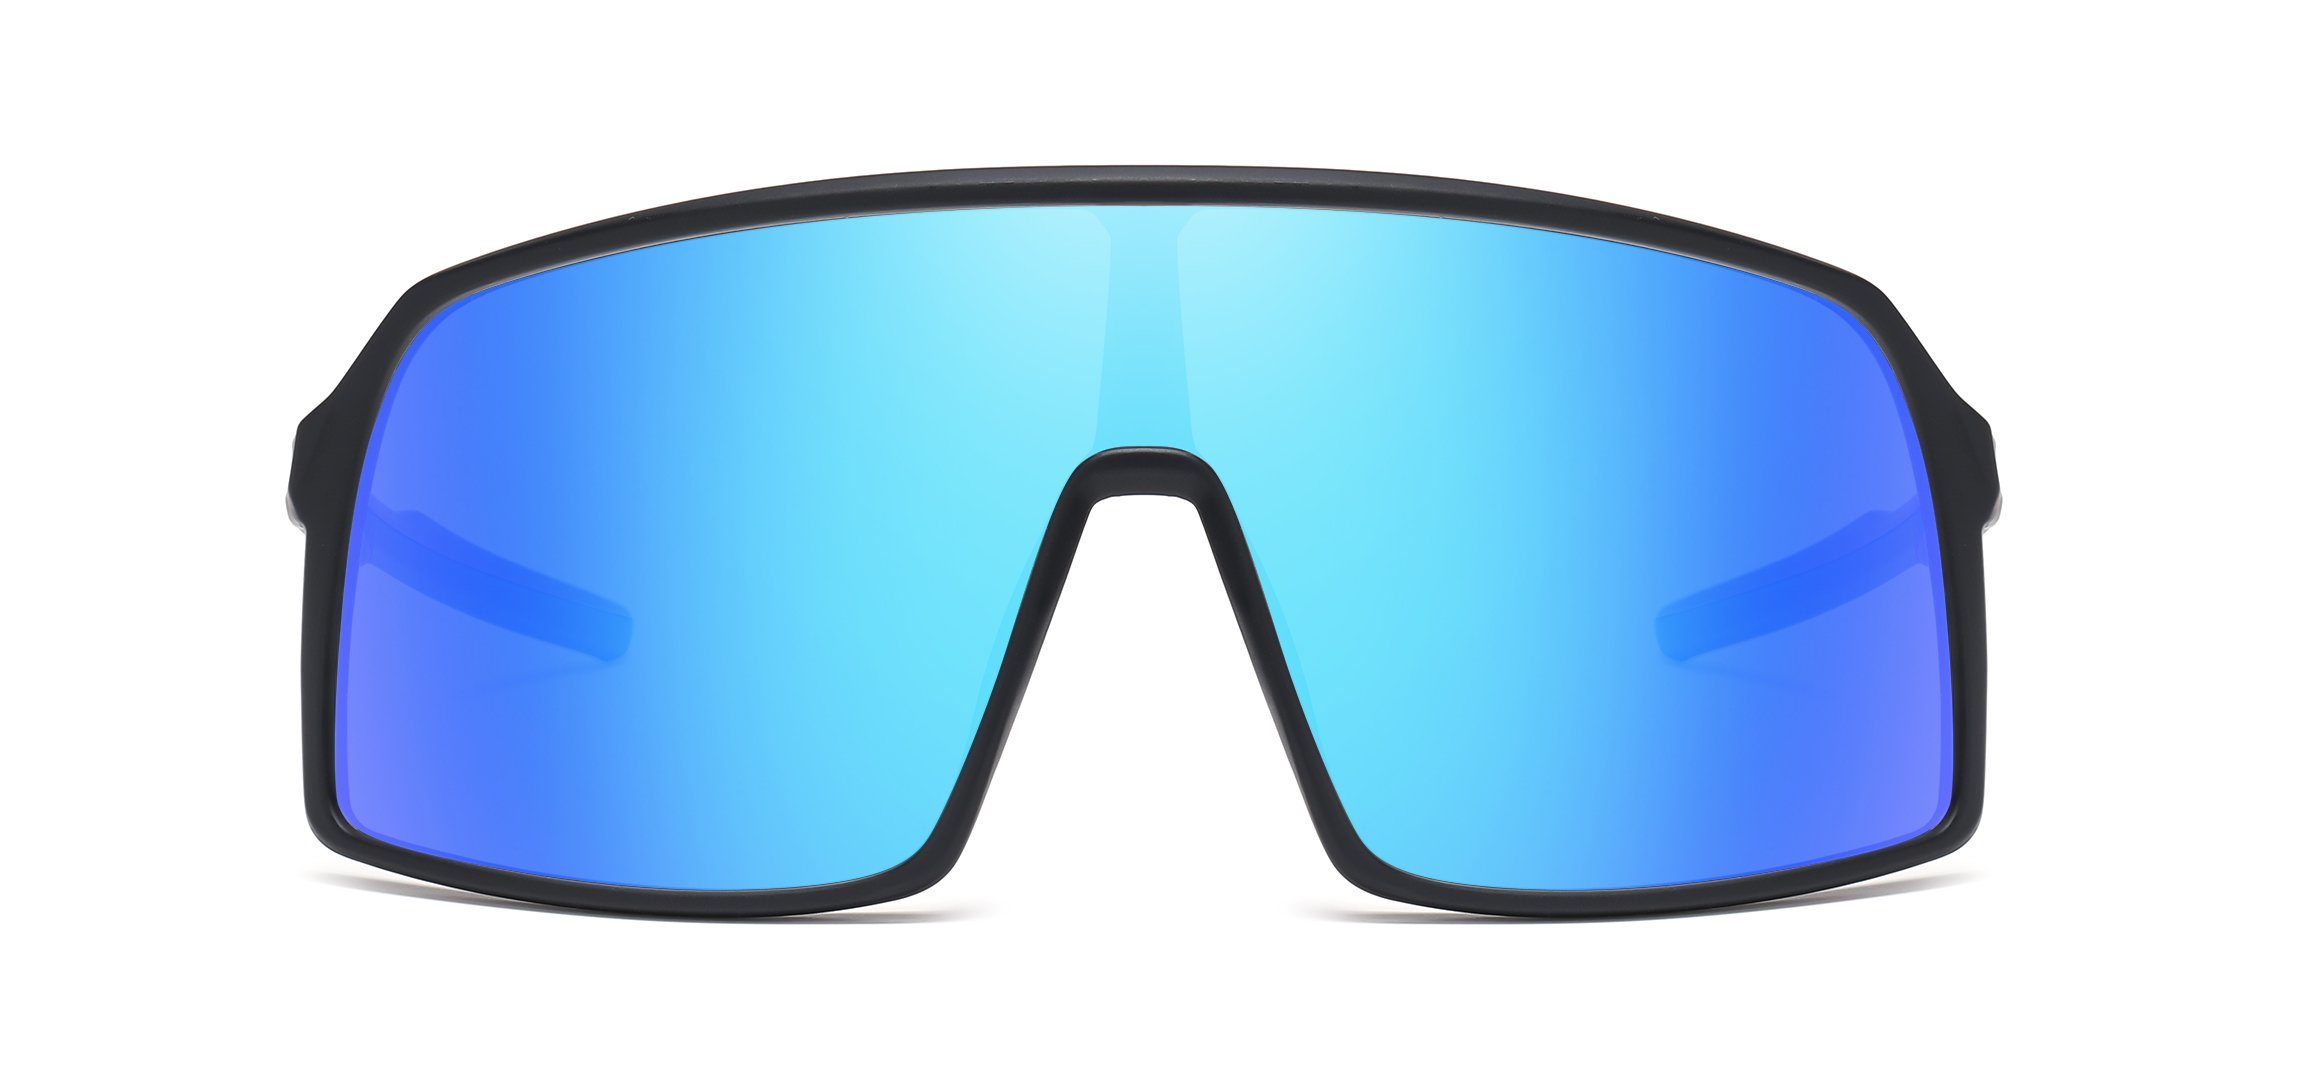 PACIEA polarisiert Fahrradbrille Sportbrille schwarzblau Fahrradbrille leicht Unisex Damen Herren